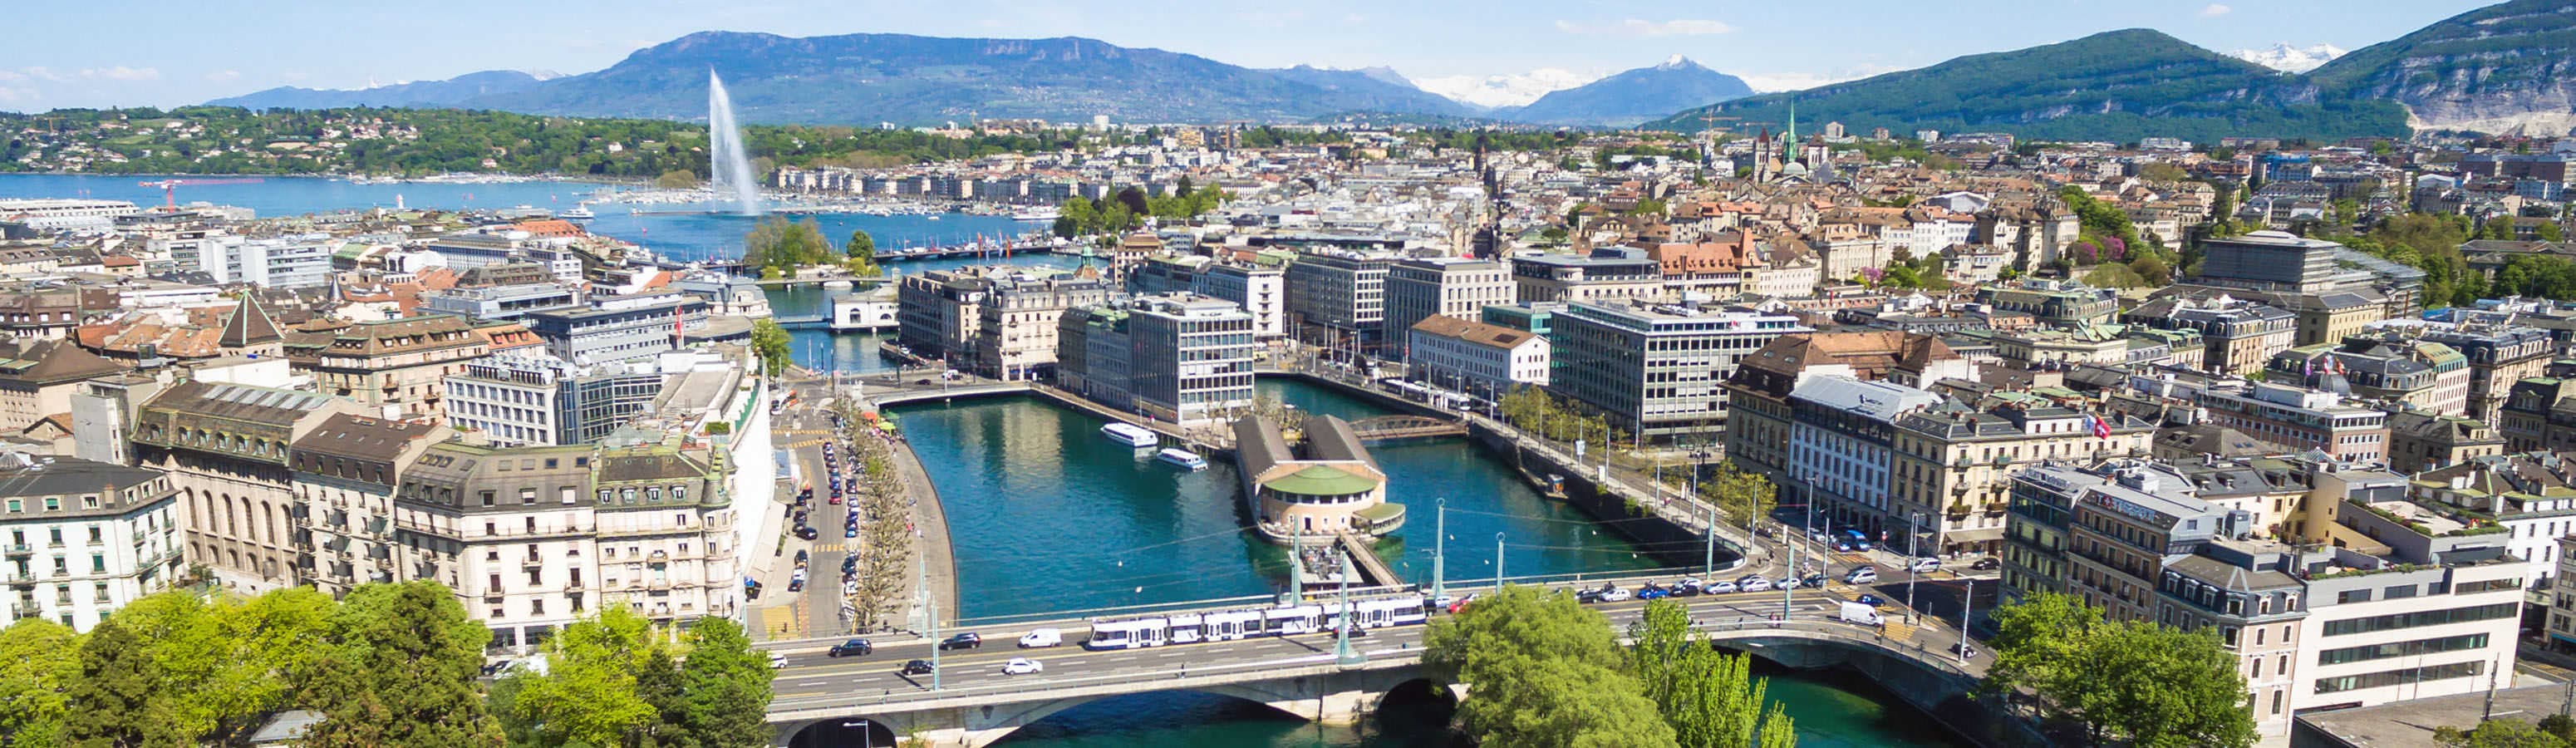 Genfben látogasson el a Motor Show-ra, vagy sétáljon át a varázslatos városban